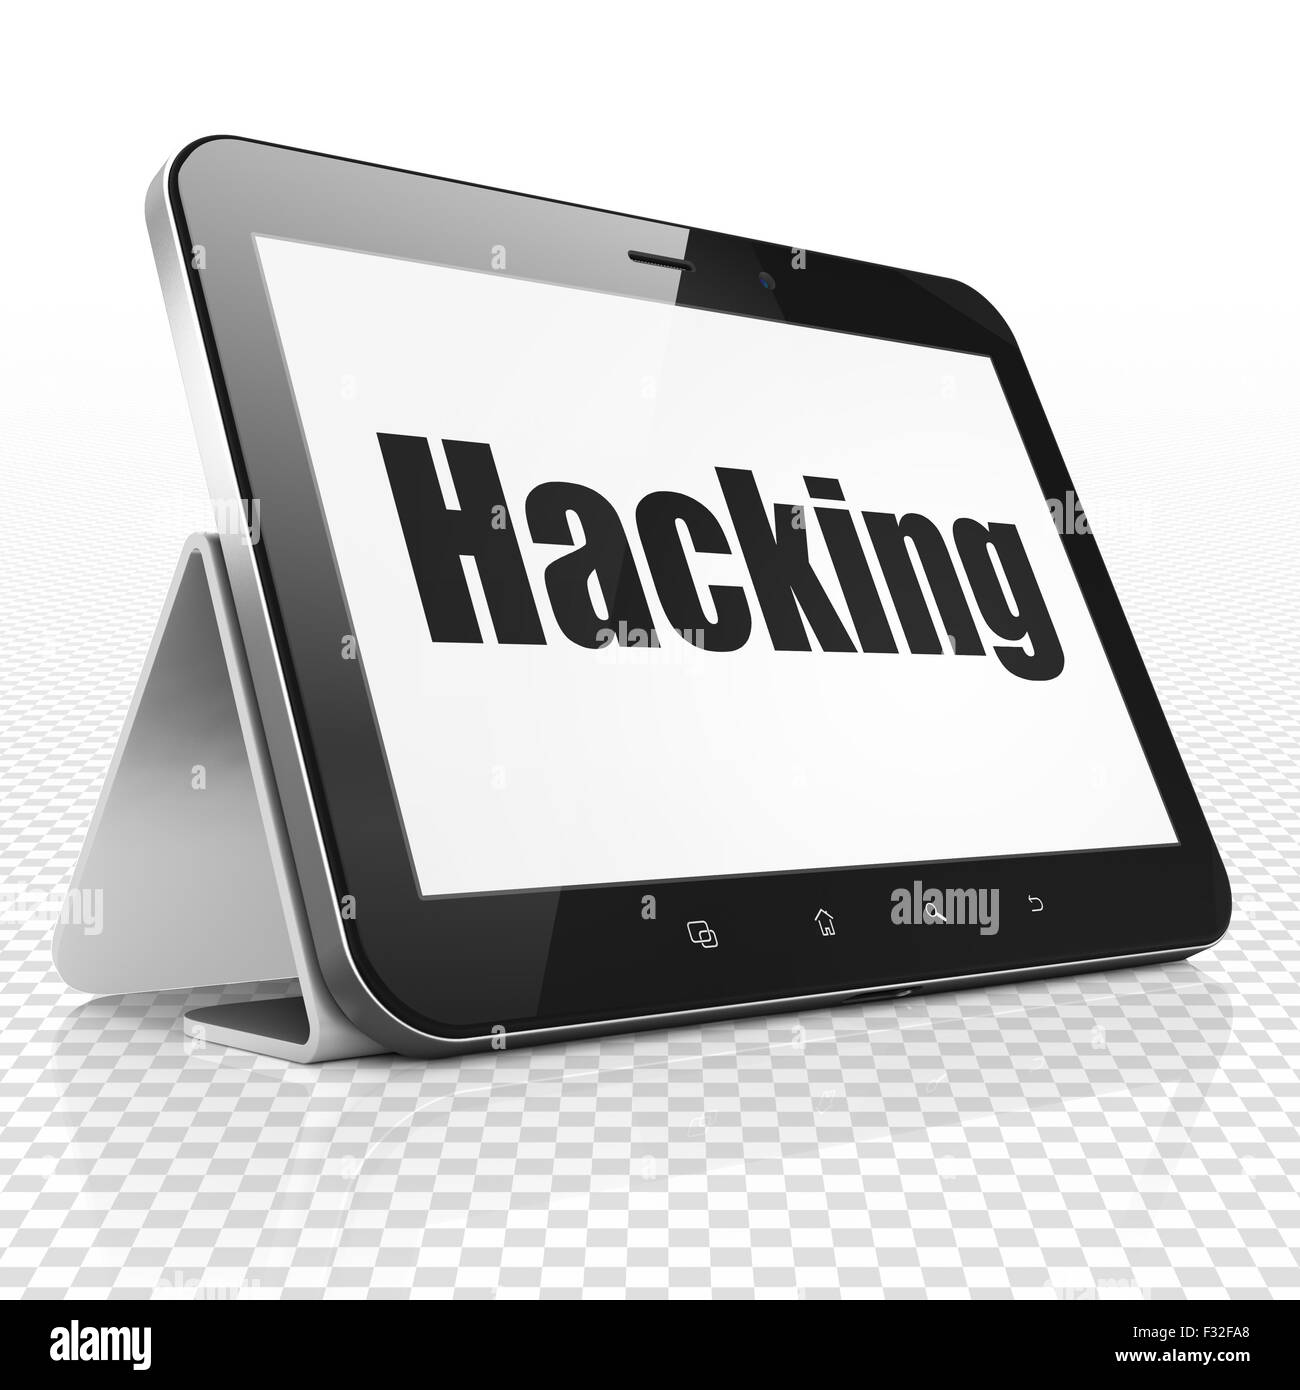 Concetto di sicurezza: Computer tablet con Hacking sul display Foto Stock